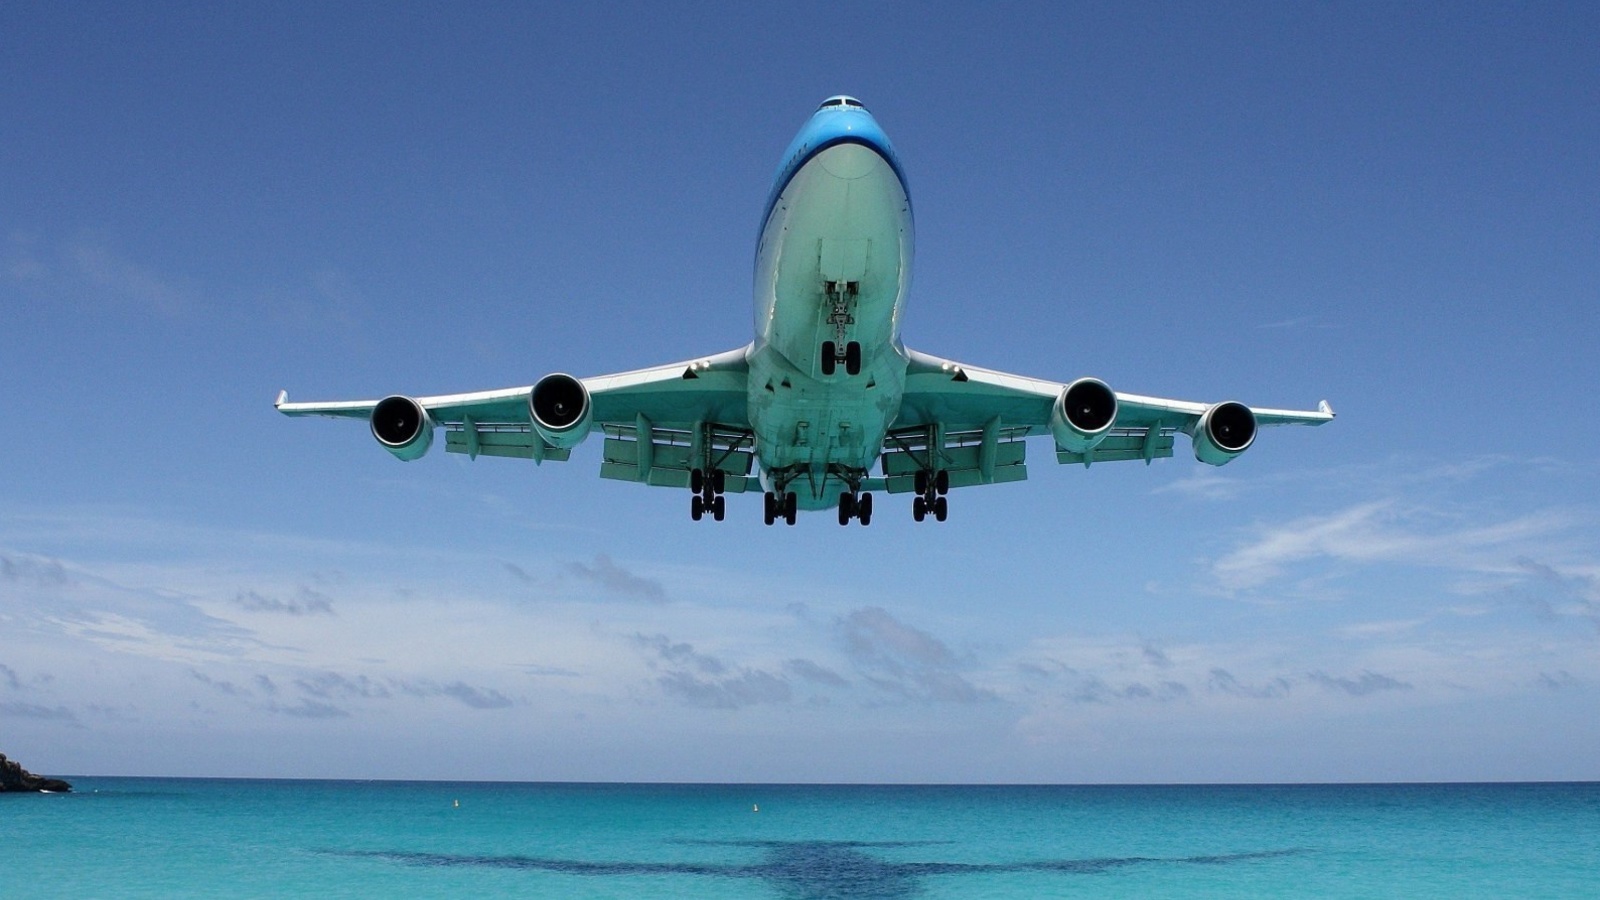 Das Boeing 747 in St Maarten Extreme Airport Wallpaper 1600x900